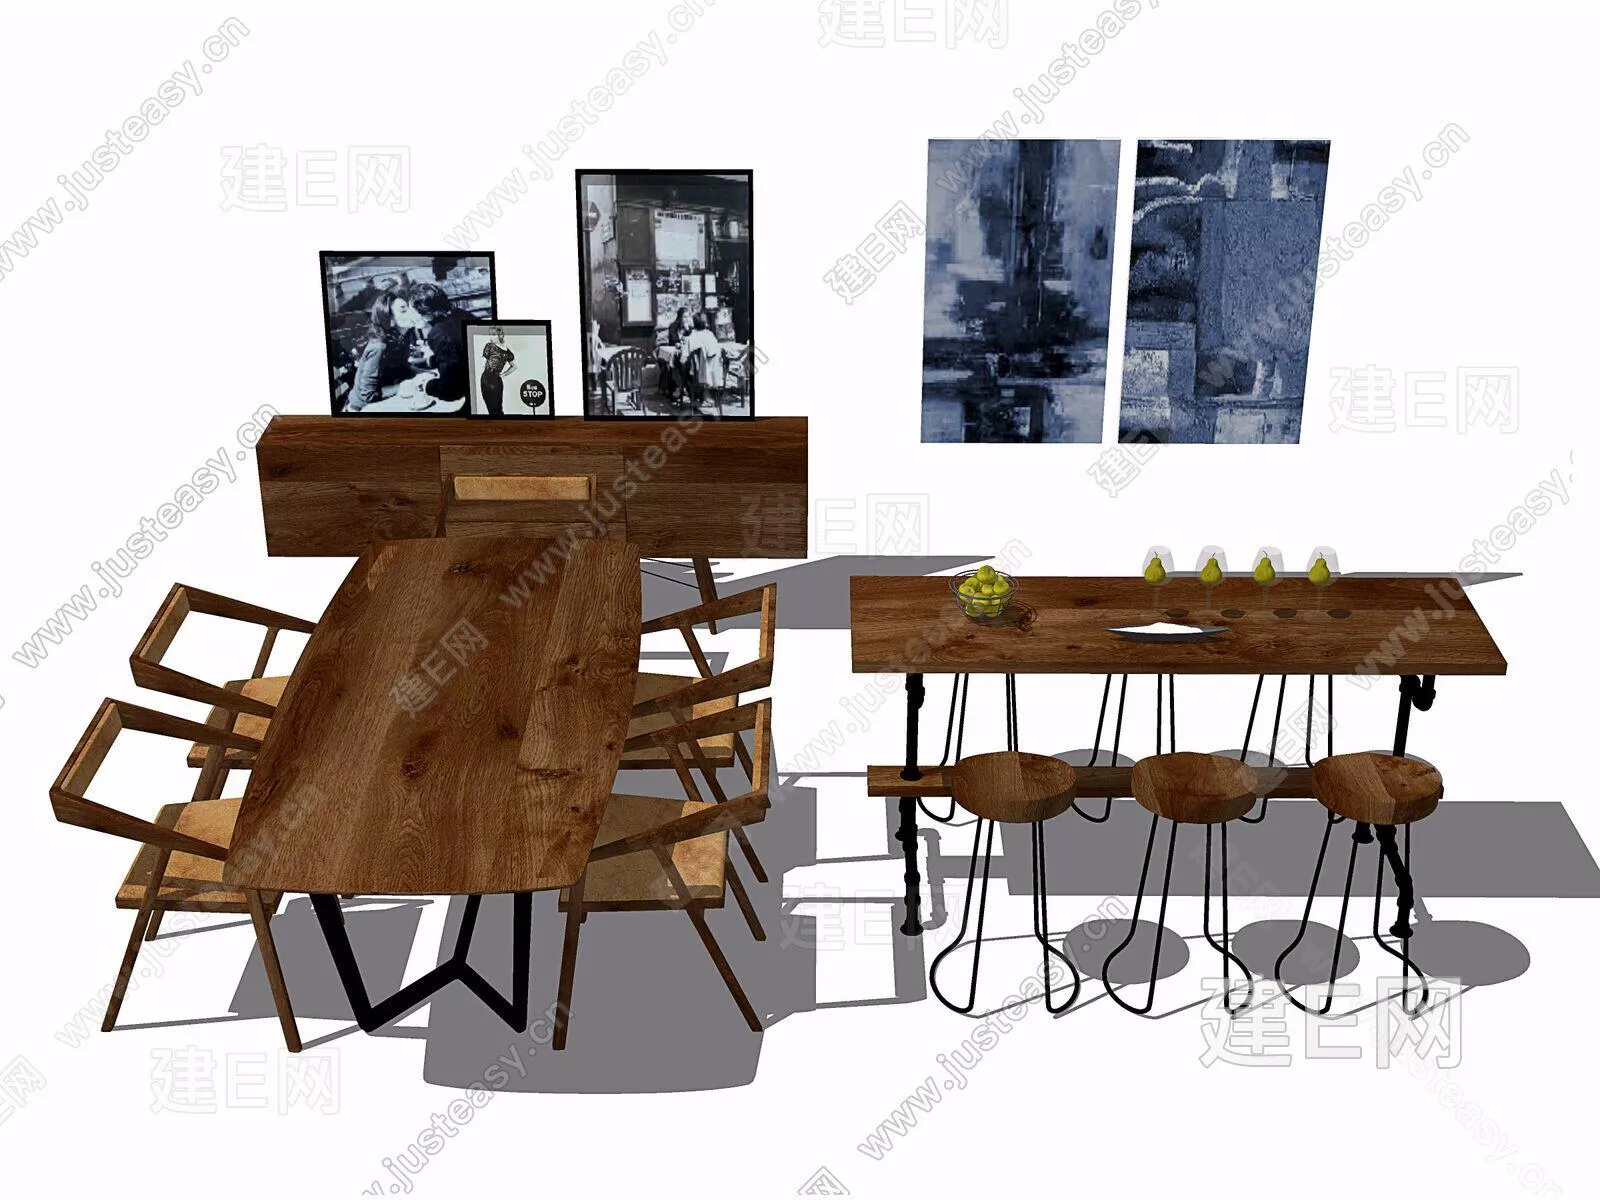 INDUSTRIAL DINING ROOM - SKETCHUP 3D SCENE - ENSCAPE - 105595299